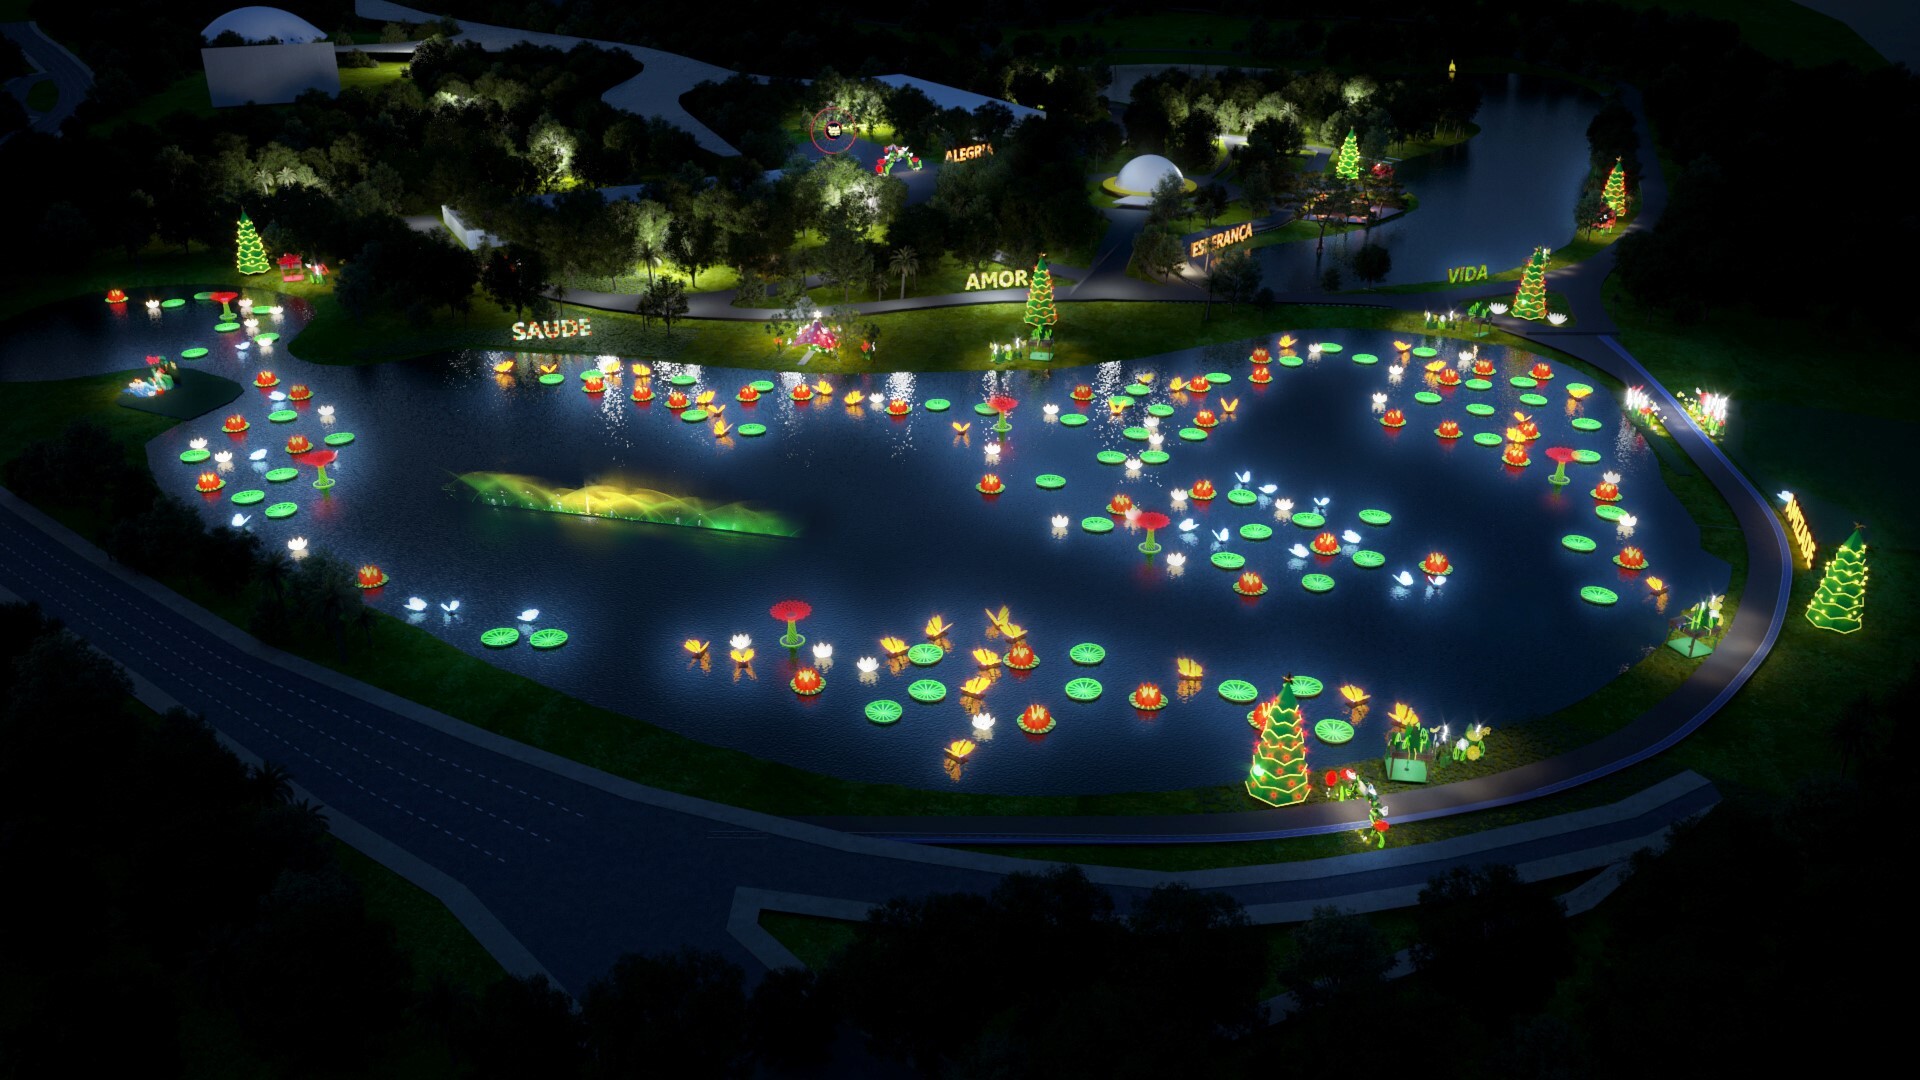 Natal no Ibirapuera tem show de luzes no lago e circuito de árvores🎄